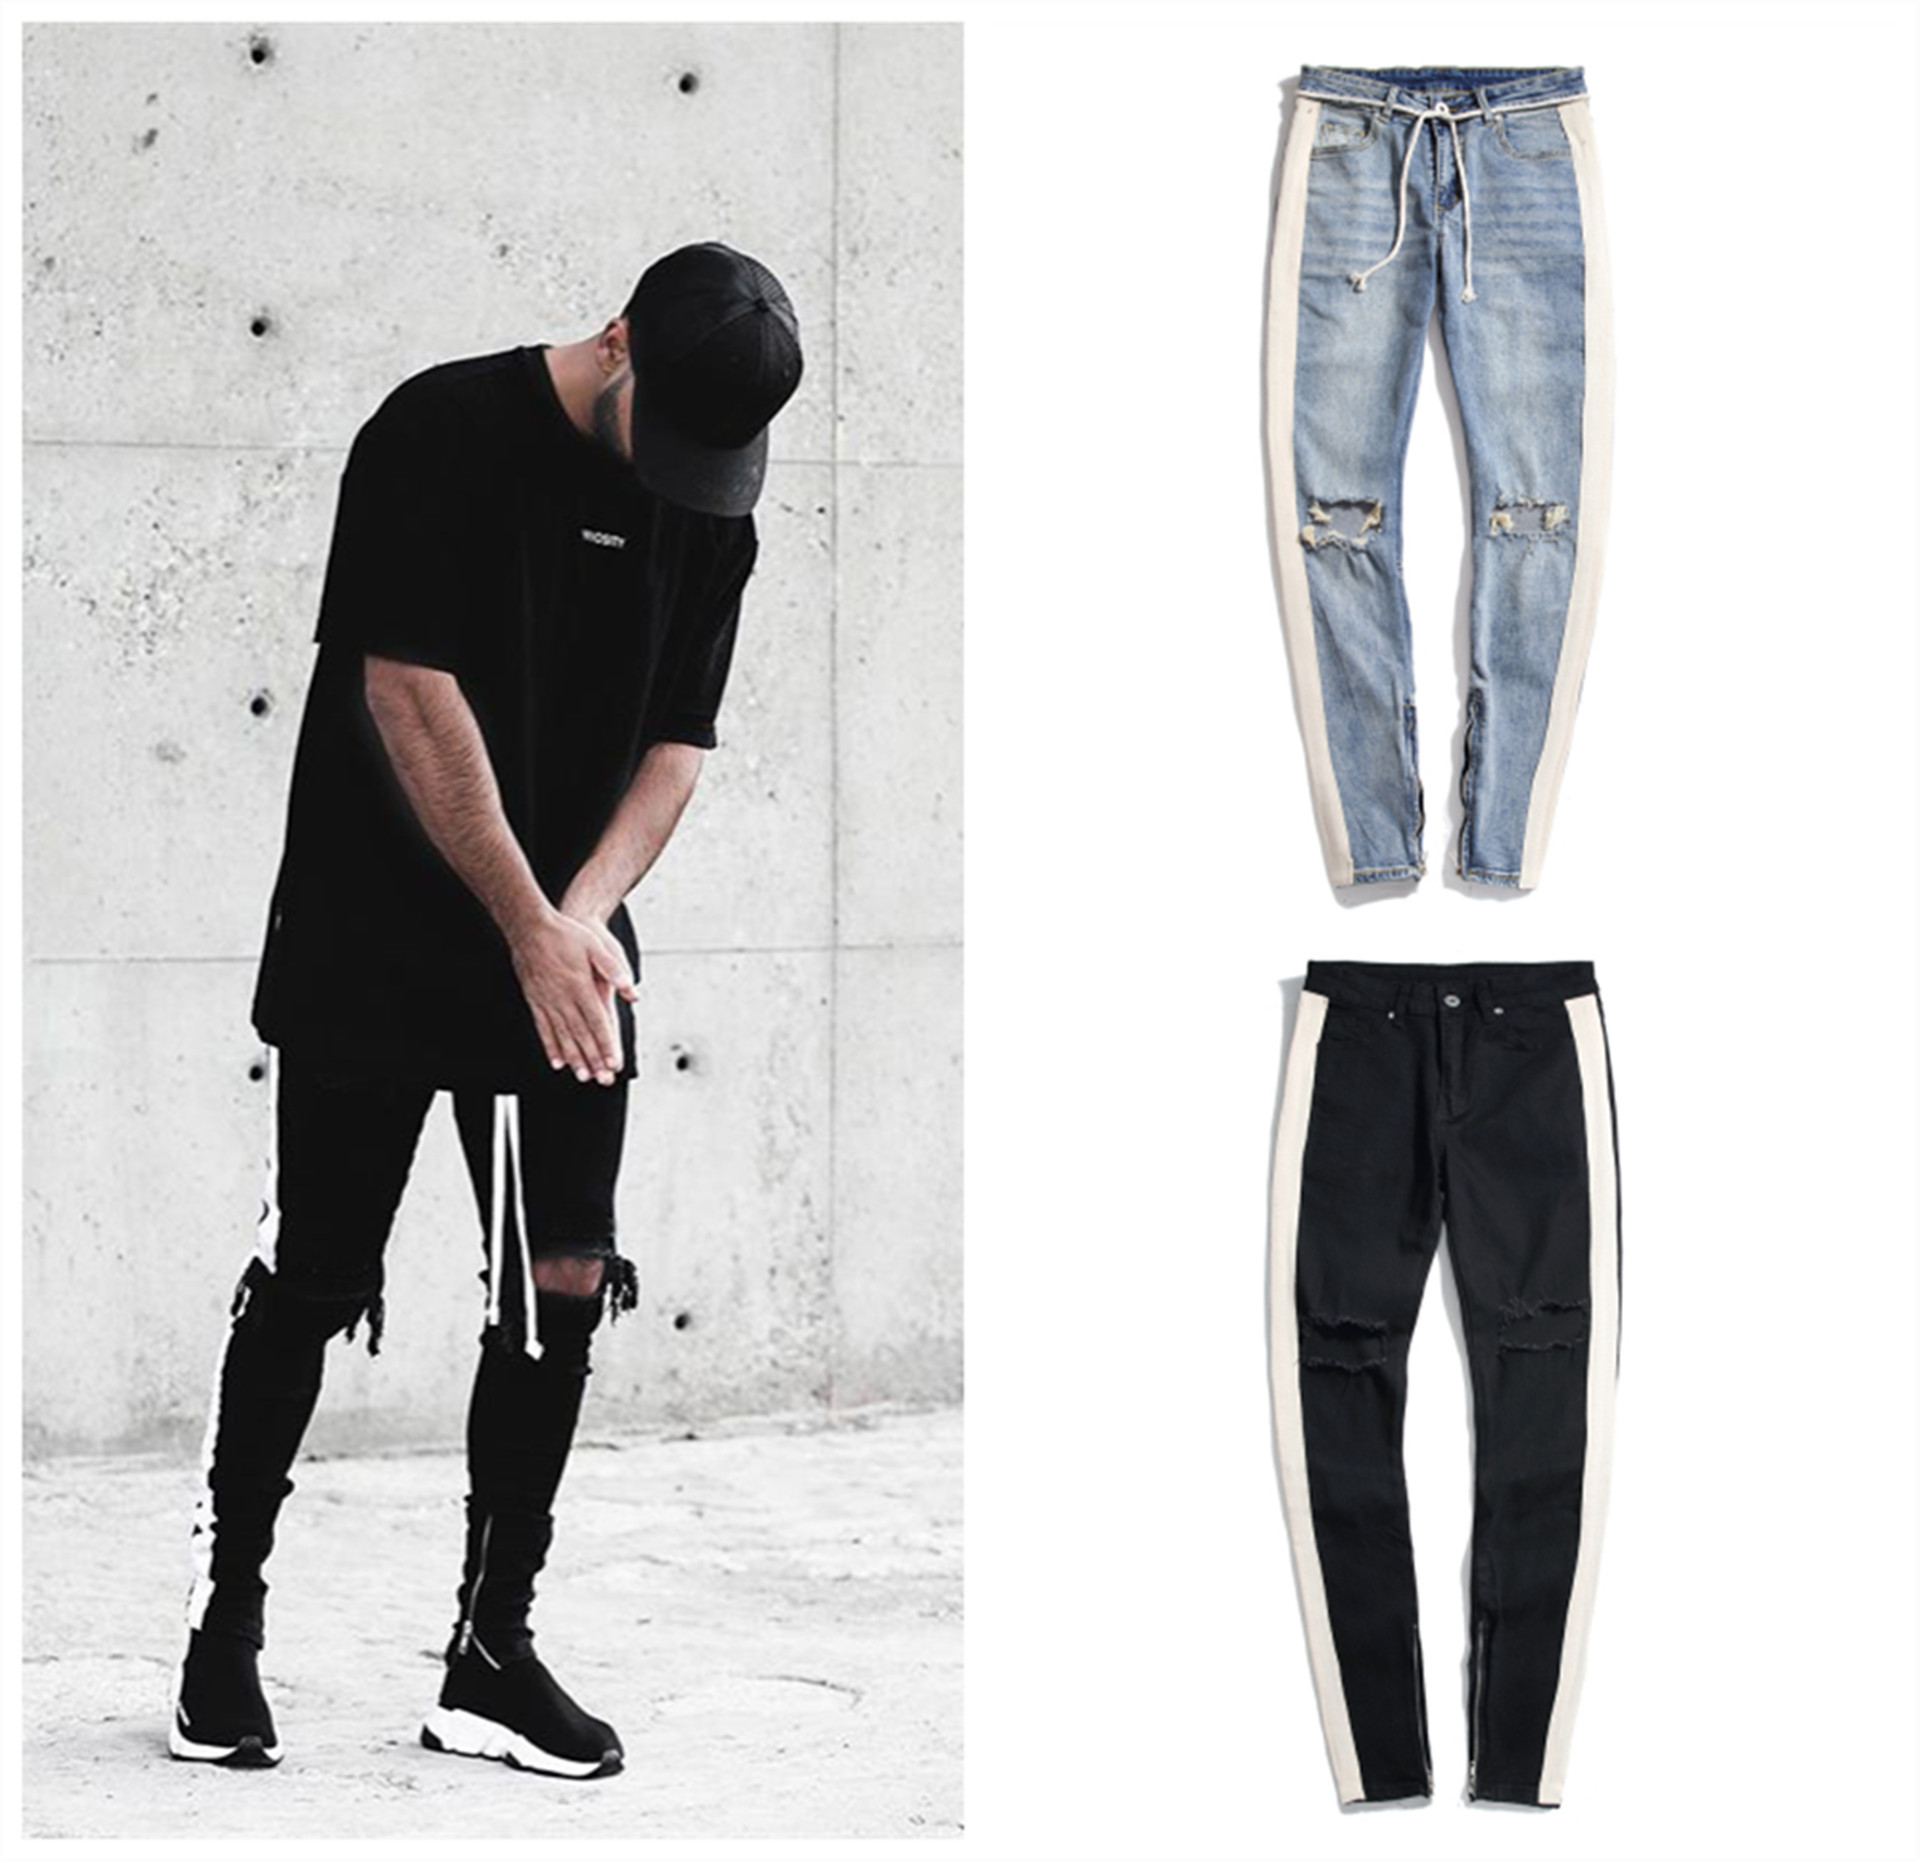 Masculino jeans homem homem listra zíper desenhador inshido buraco quebrado preto hip hop sportswear elástico cintura calças moda calças calças